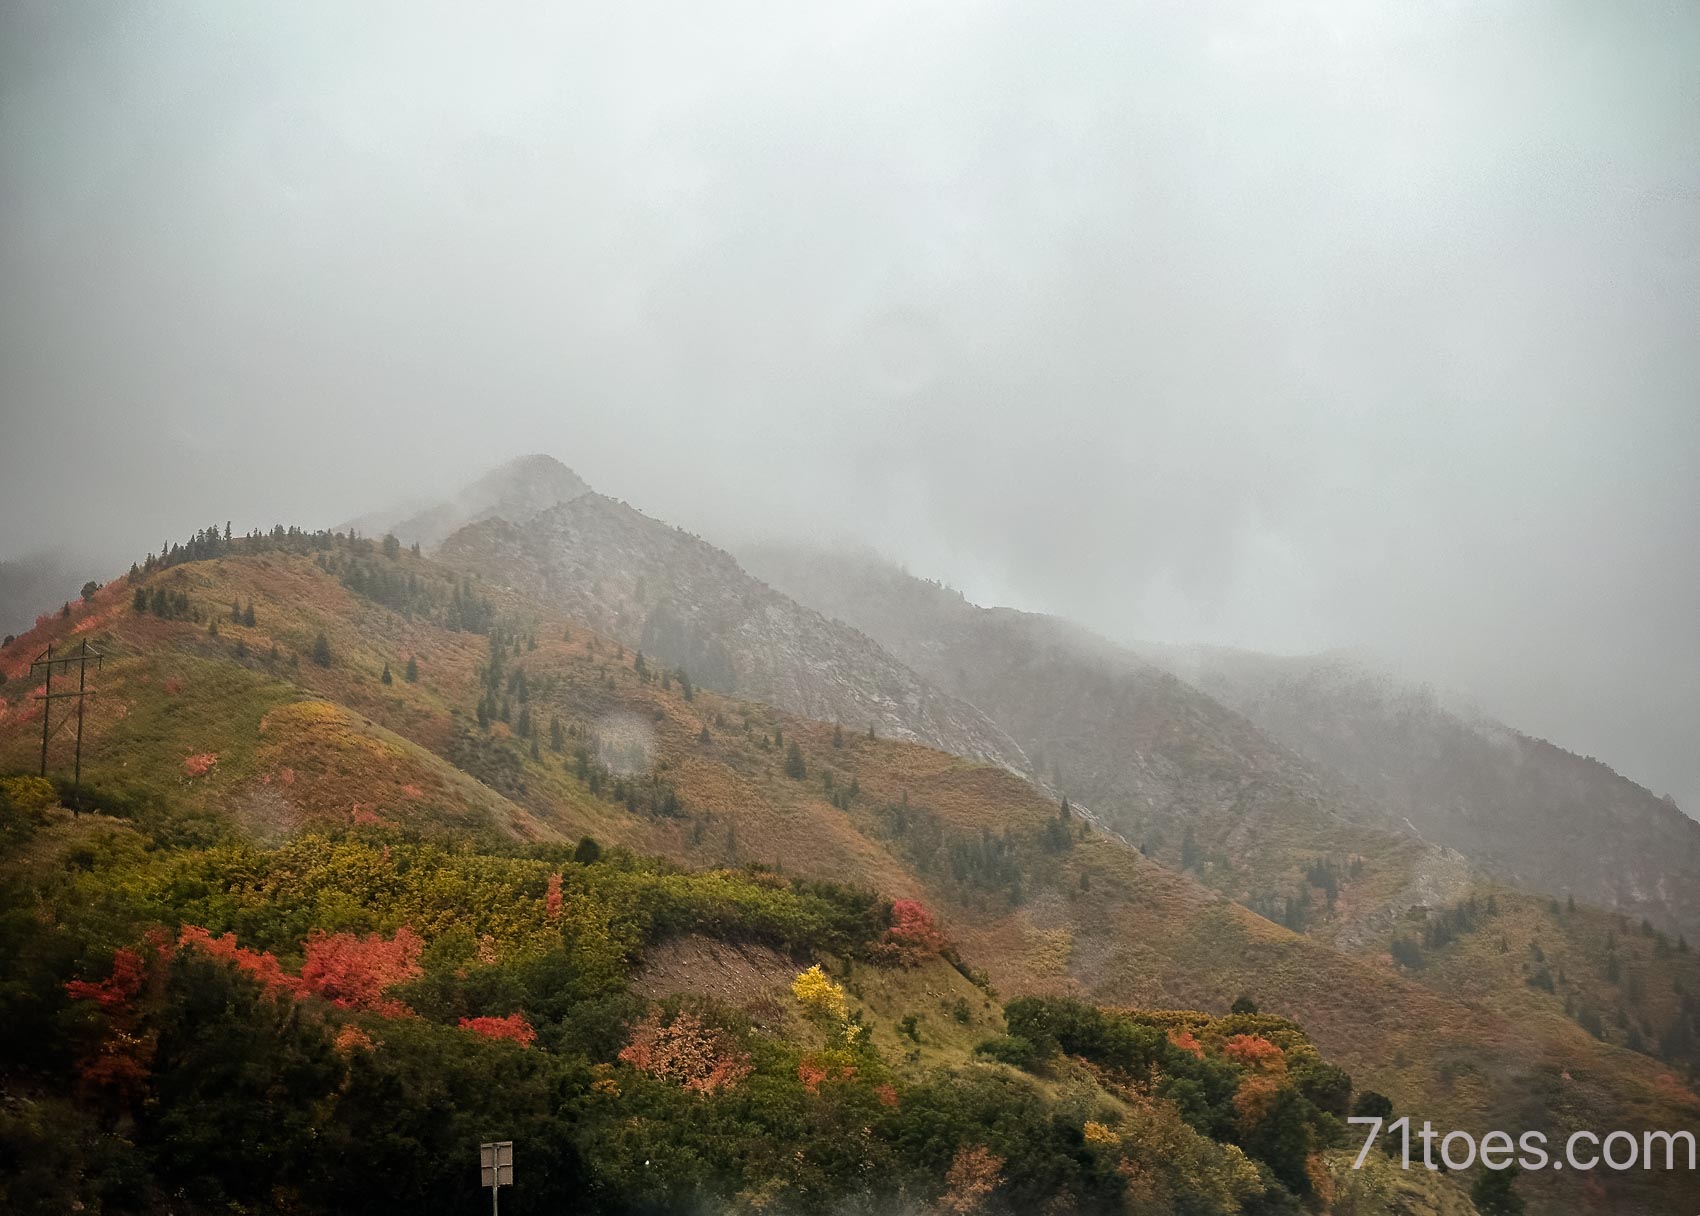 The fall leaves in Utah